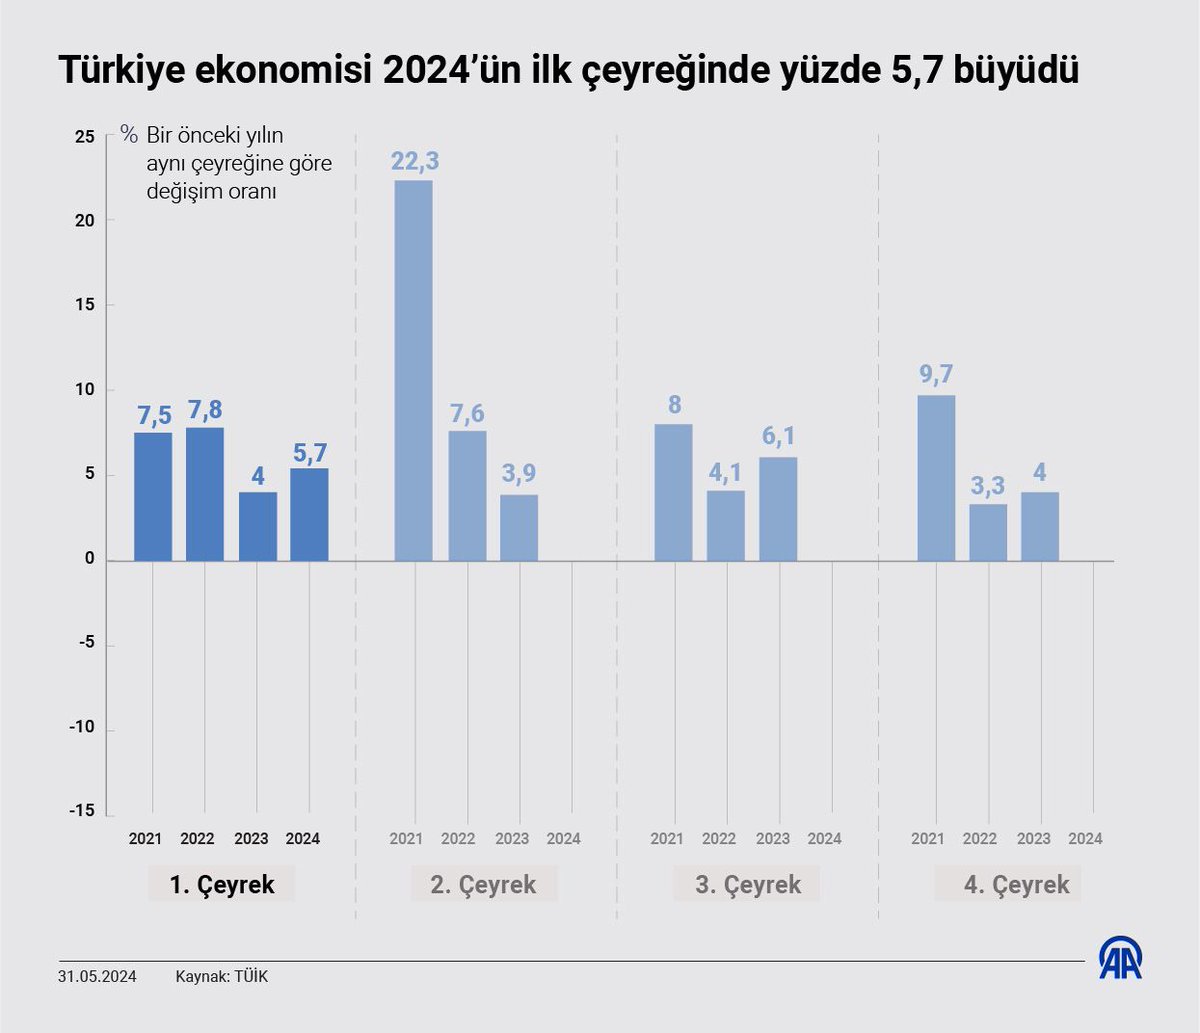 Türkiye ekonomisi yılın ilk çeyreğinde yüzde 5,7 büyüdü. Açıklanan bu büyümeyle Türkiye ekonomisi üst üste 15 çeyrek büyümüş oldu.